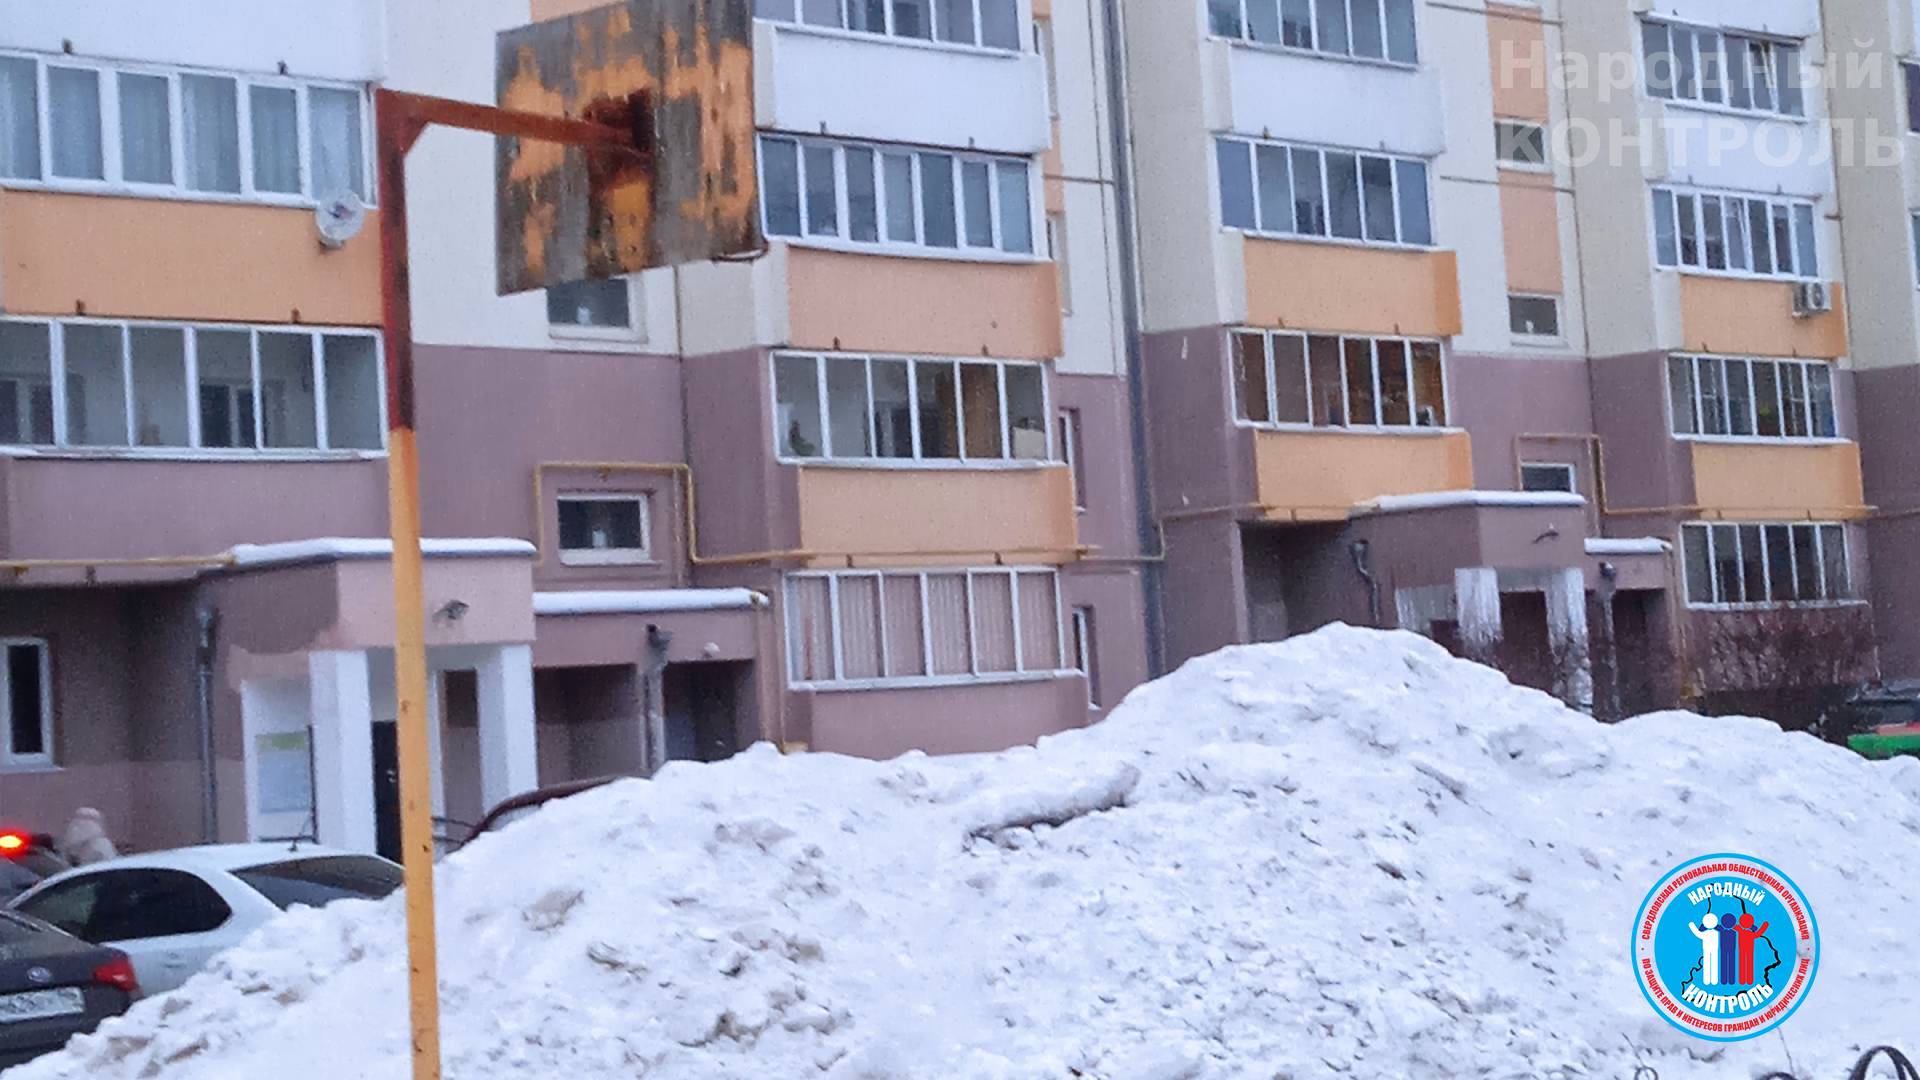 Управляющая весь убранный снег и грязь вываливает на детскую площадку, Екатеринбург